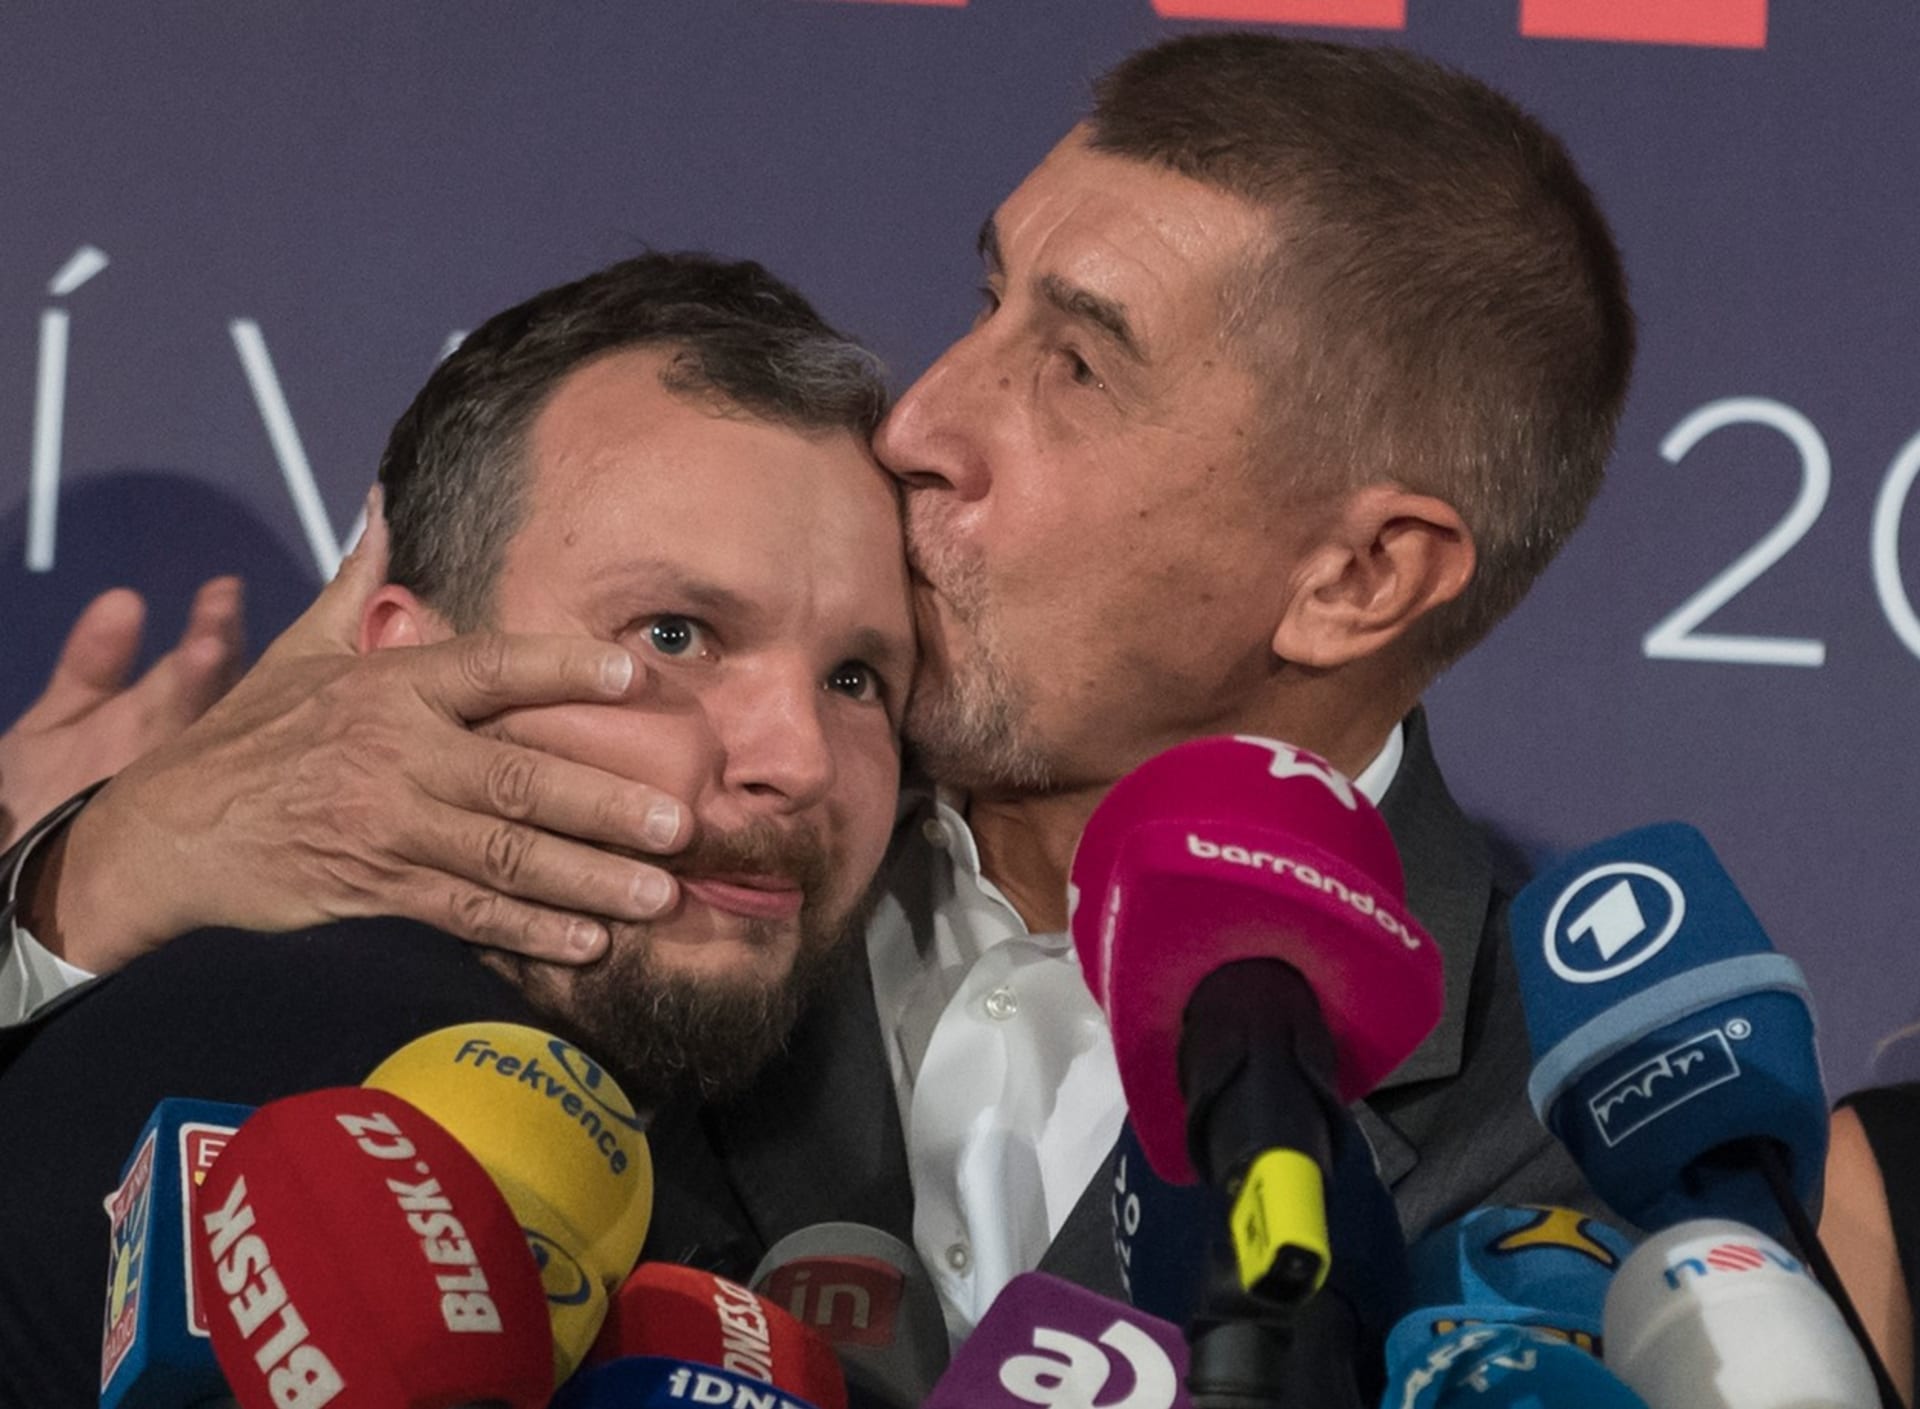 Po volbách v roce 2017 se Andrej Babiš radoval z vítězství. Na pódiu ve volebním štábu hnutí ANO tehdy políbil marketingového stratéga Marka Prchala.